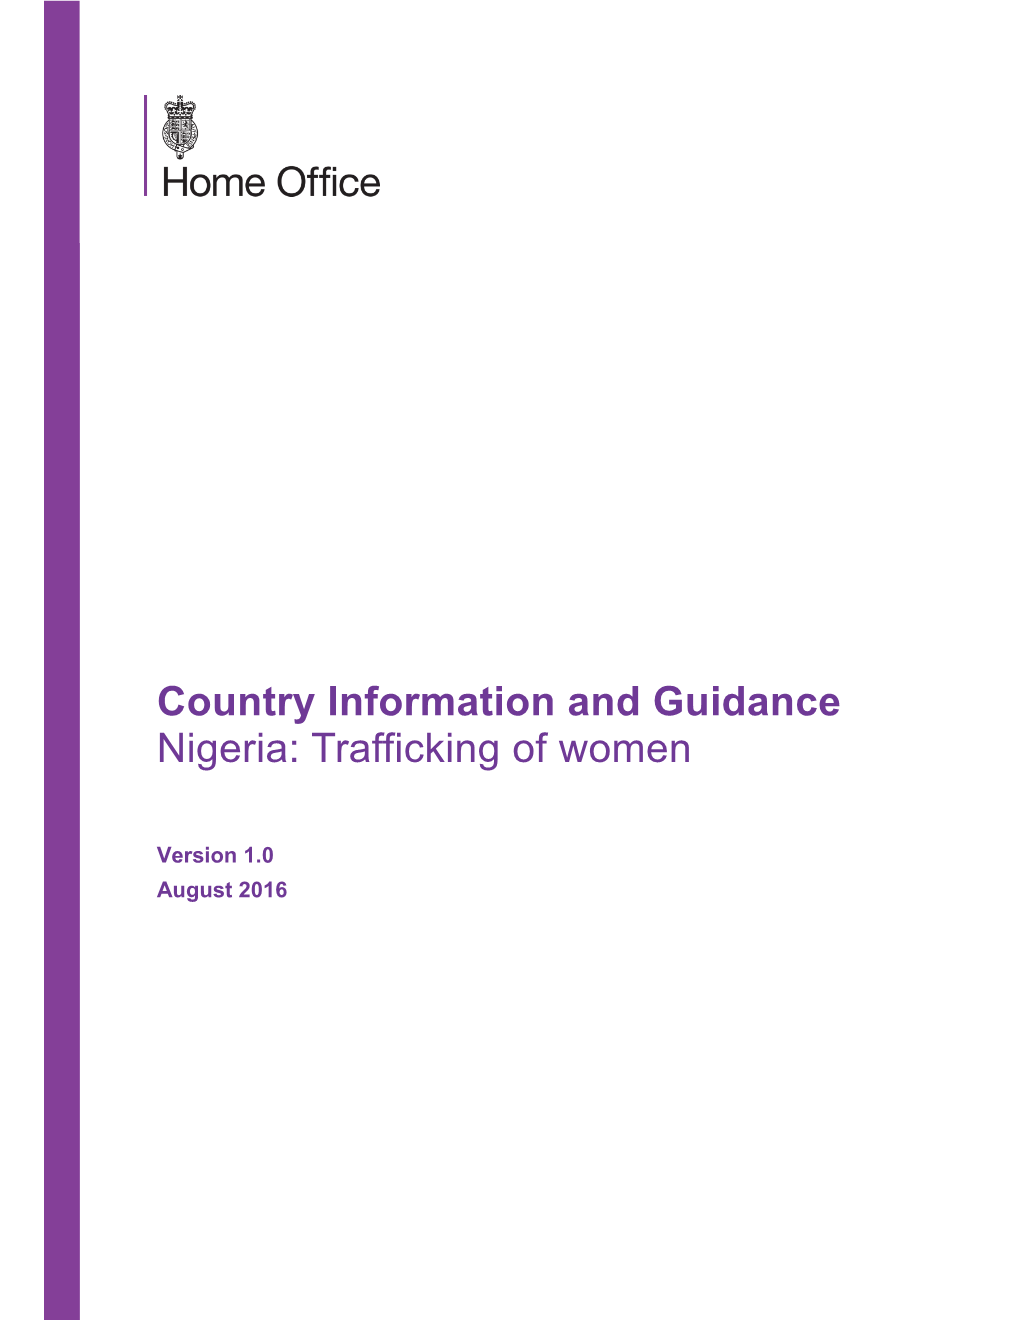 Nigeria: Trafficking of Women